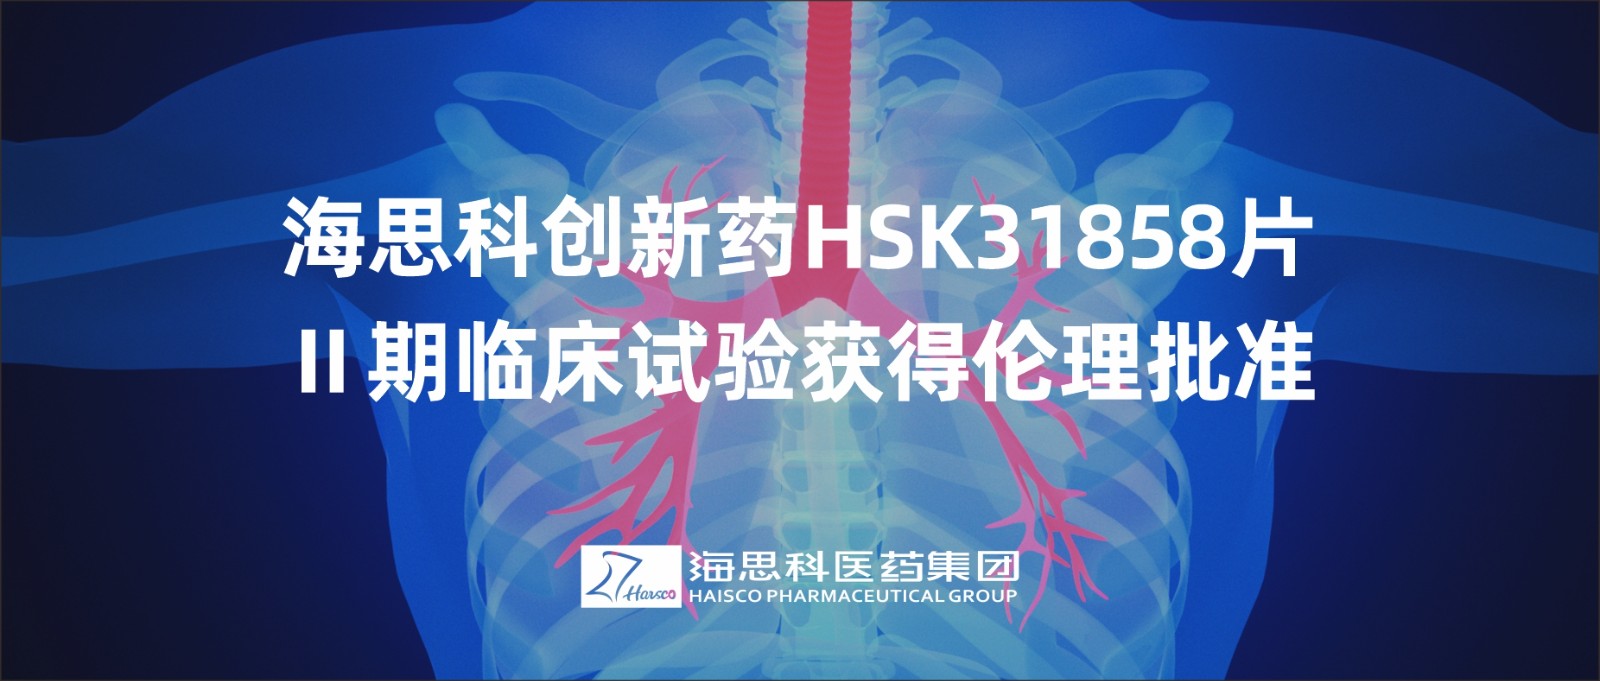 明升ms88创新药HSK31858片Ⅱ期临床试验获得伦理批准